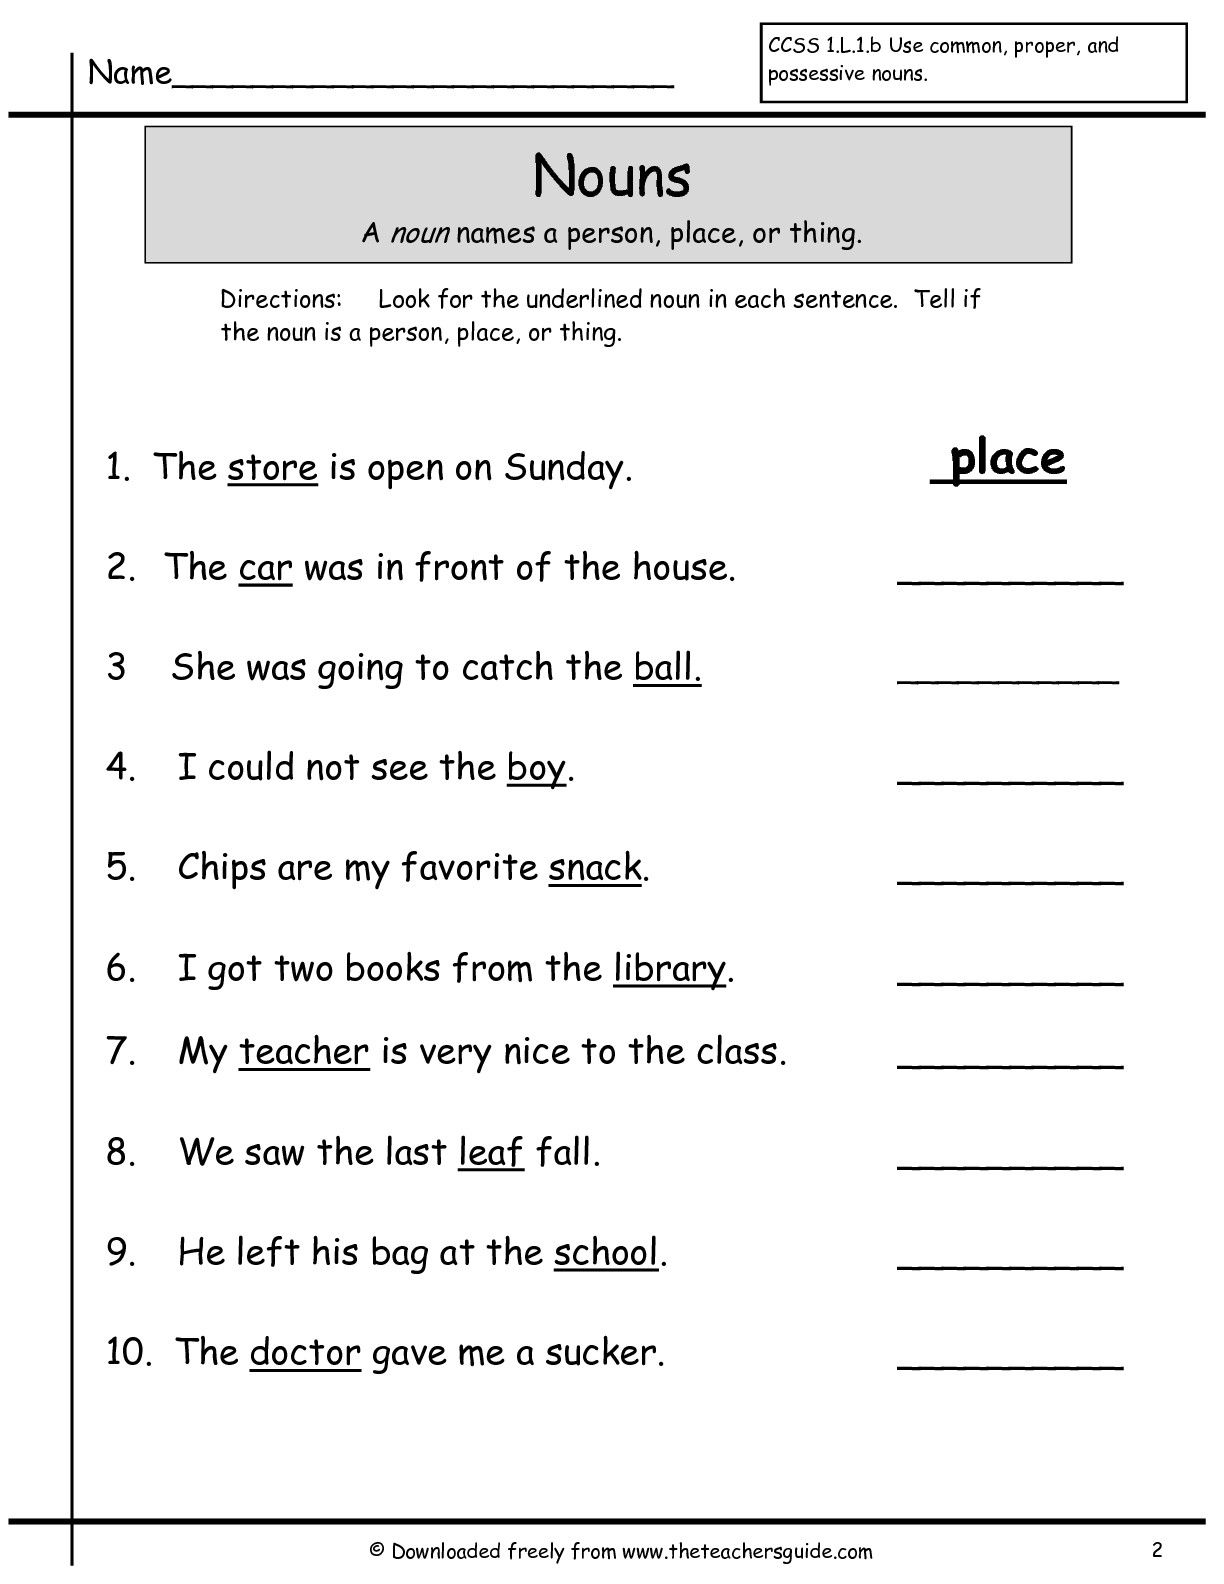 Nouns Worksheet For Grade 1